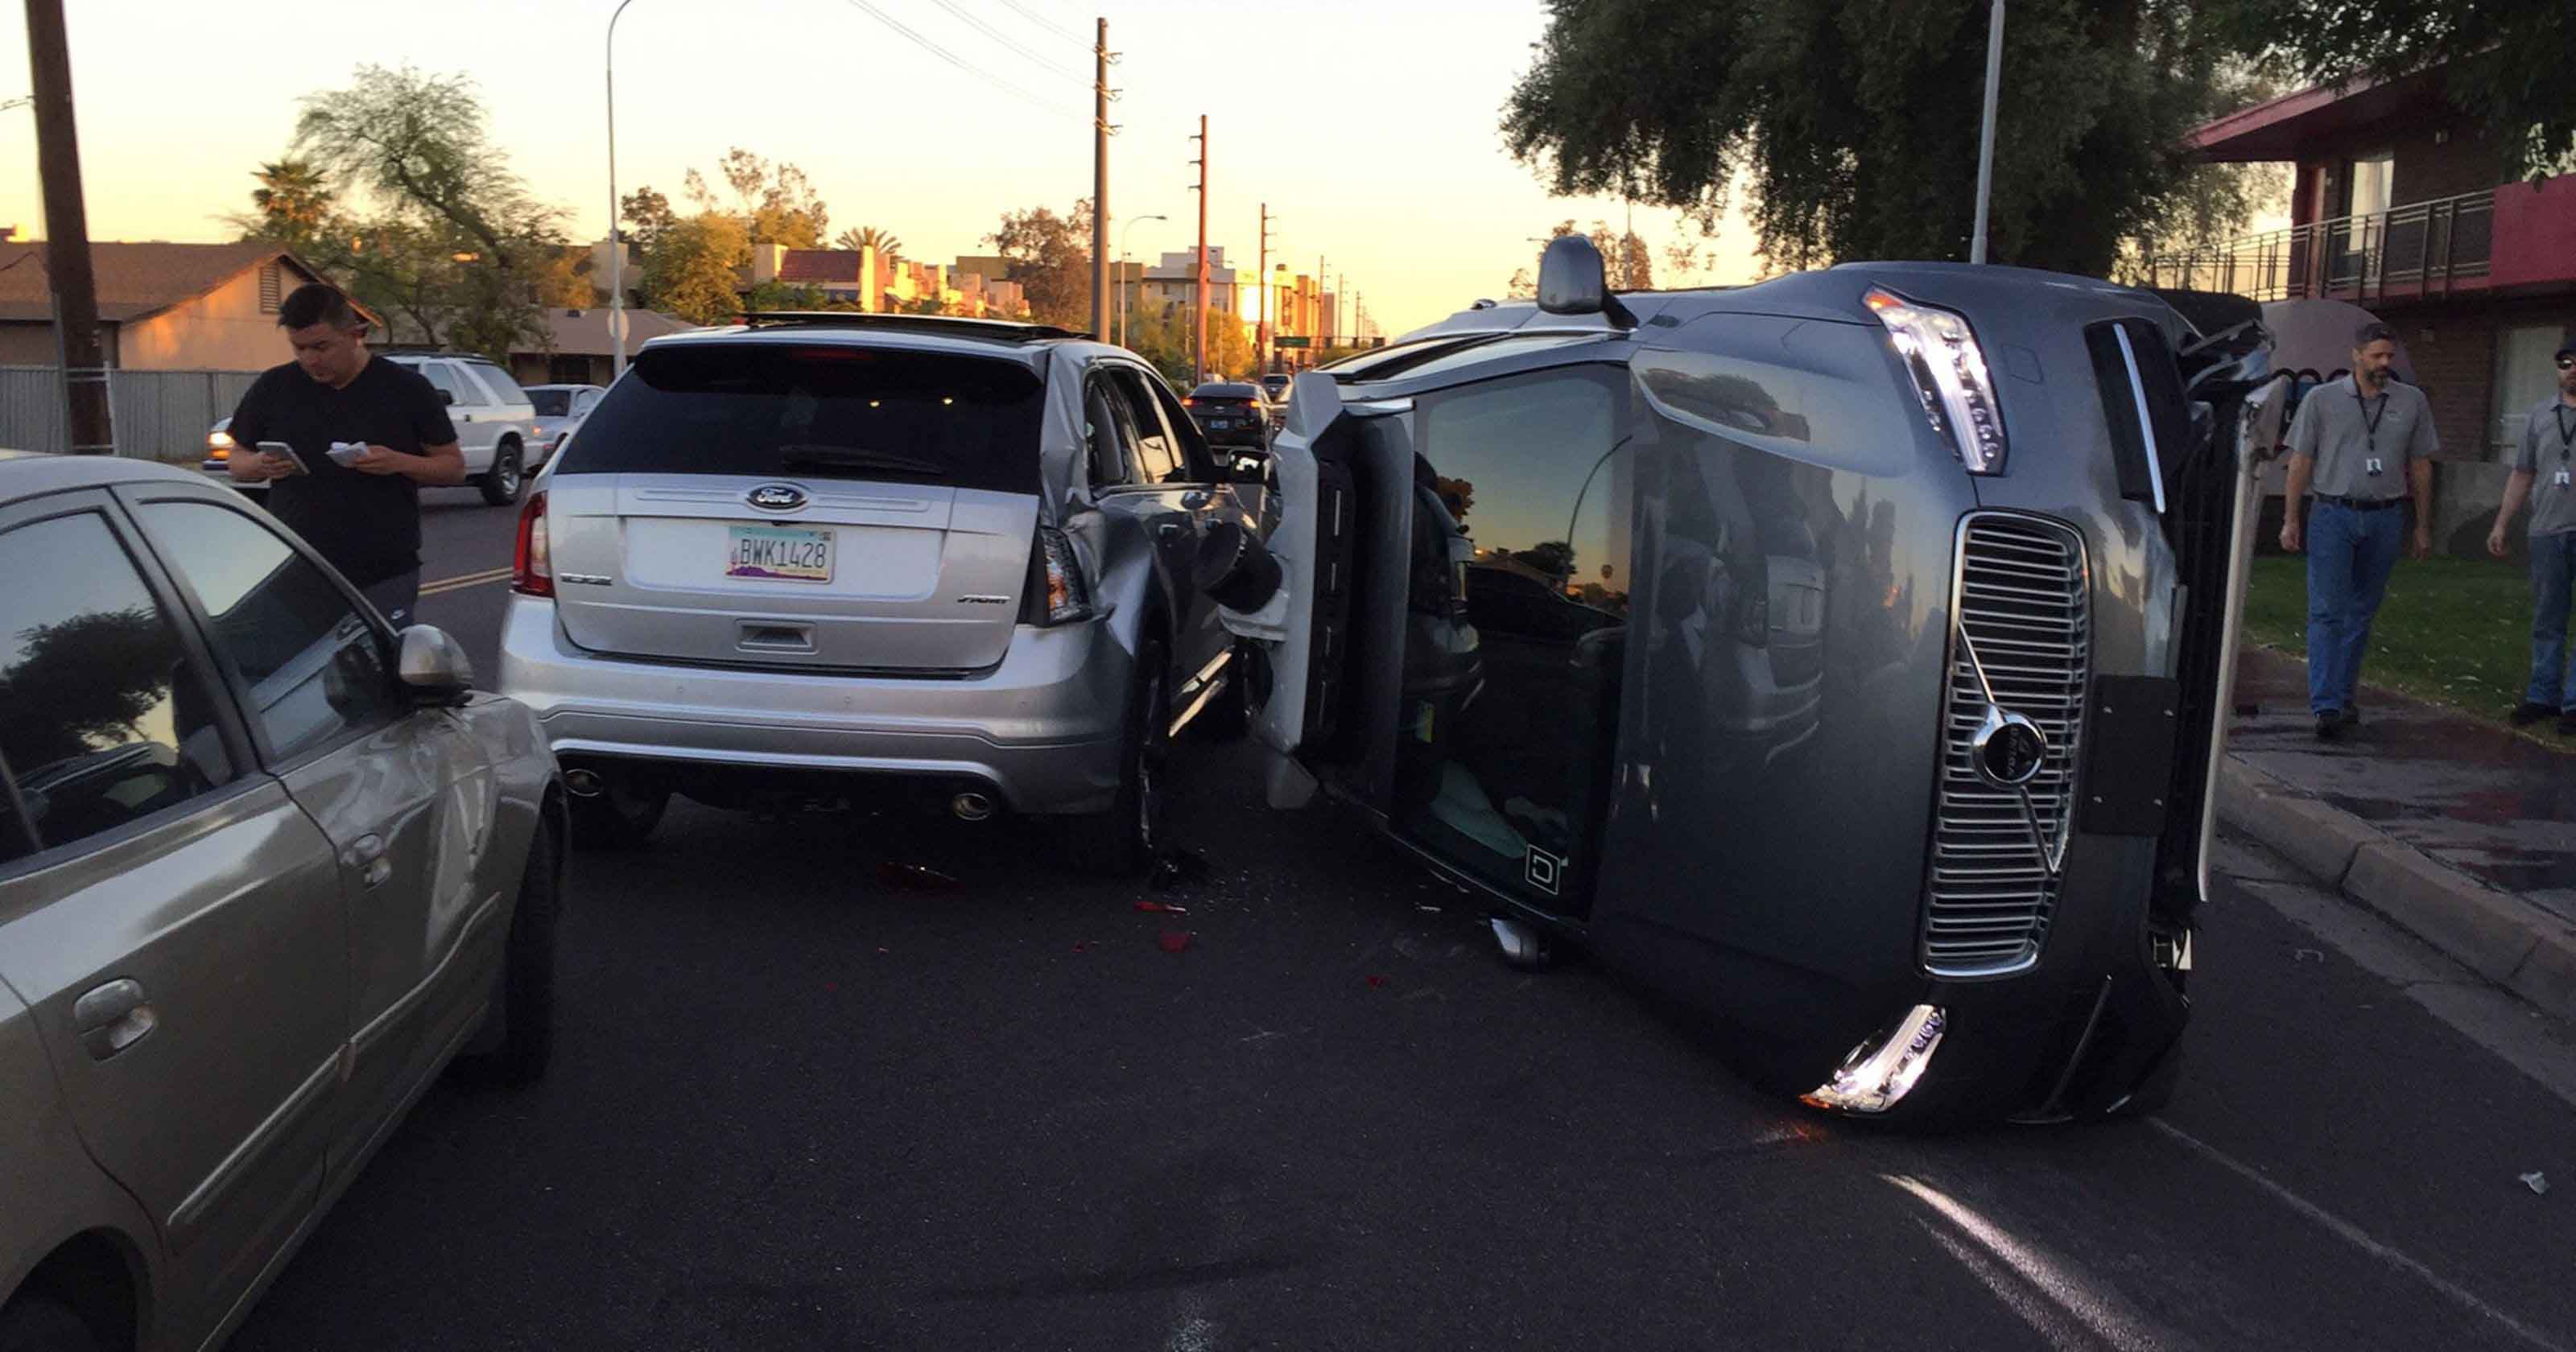 Xe tự hành tông chết người qua đường tại Arizona, Uber ngưng mọi hoạt động thử nghiệm đợi điều tra